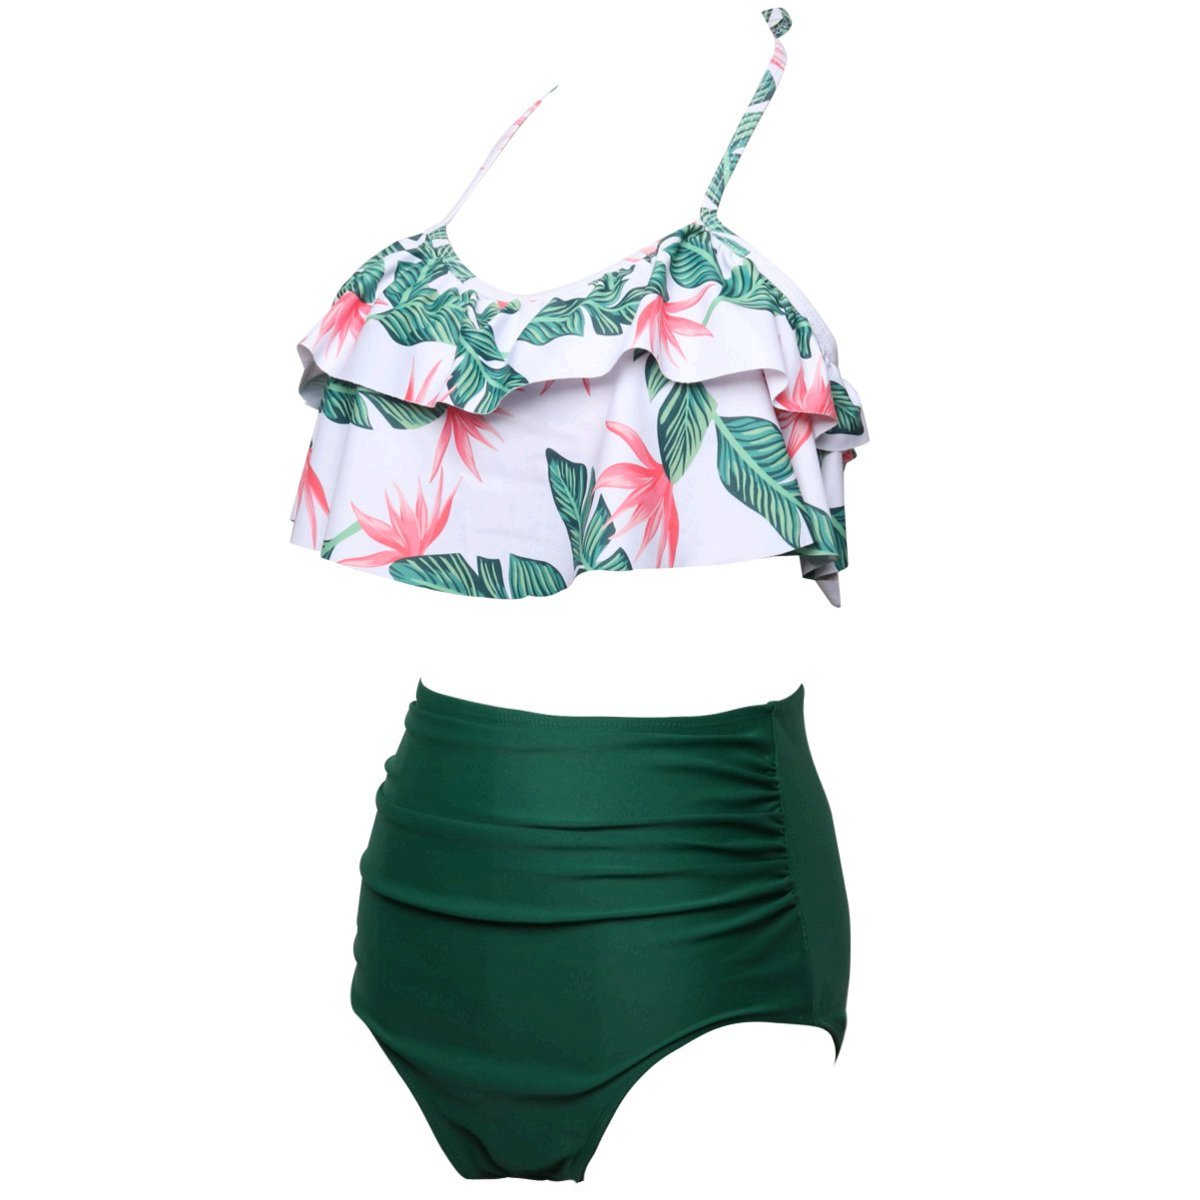 KABETY Girls Swimsuit Two Pieces Bikini Set Ruffle Falbala, Green, Size ...